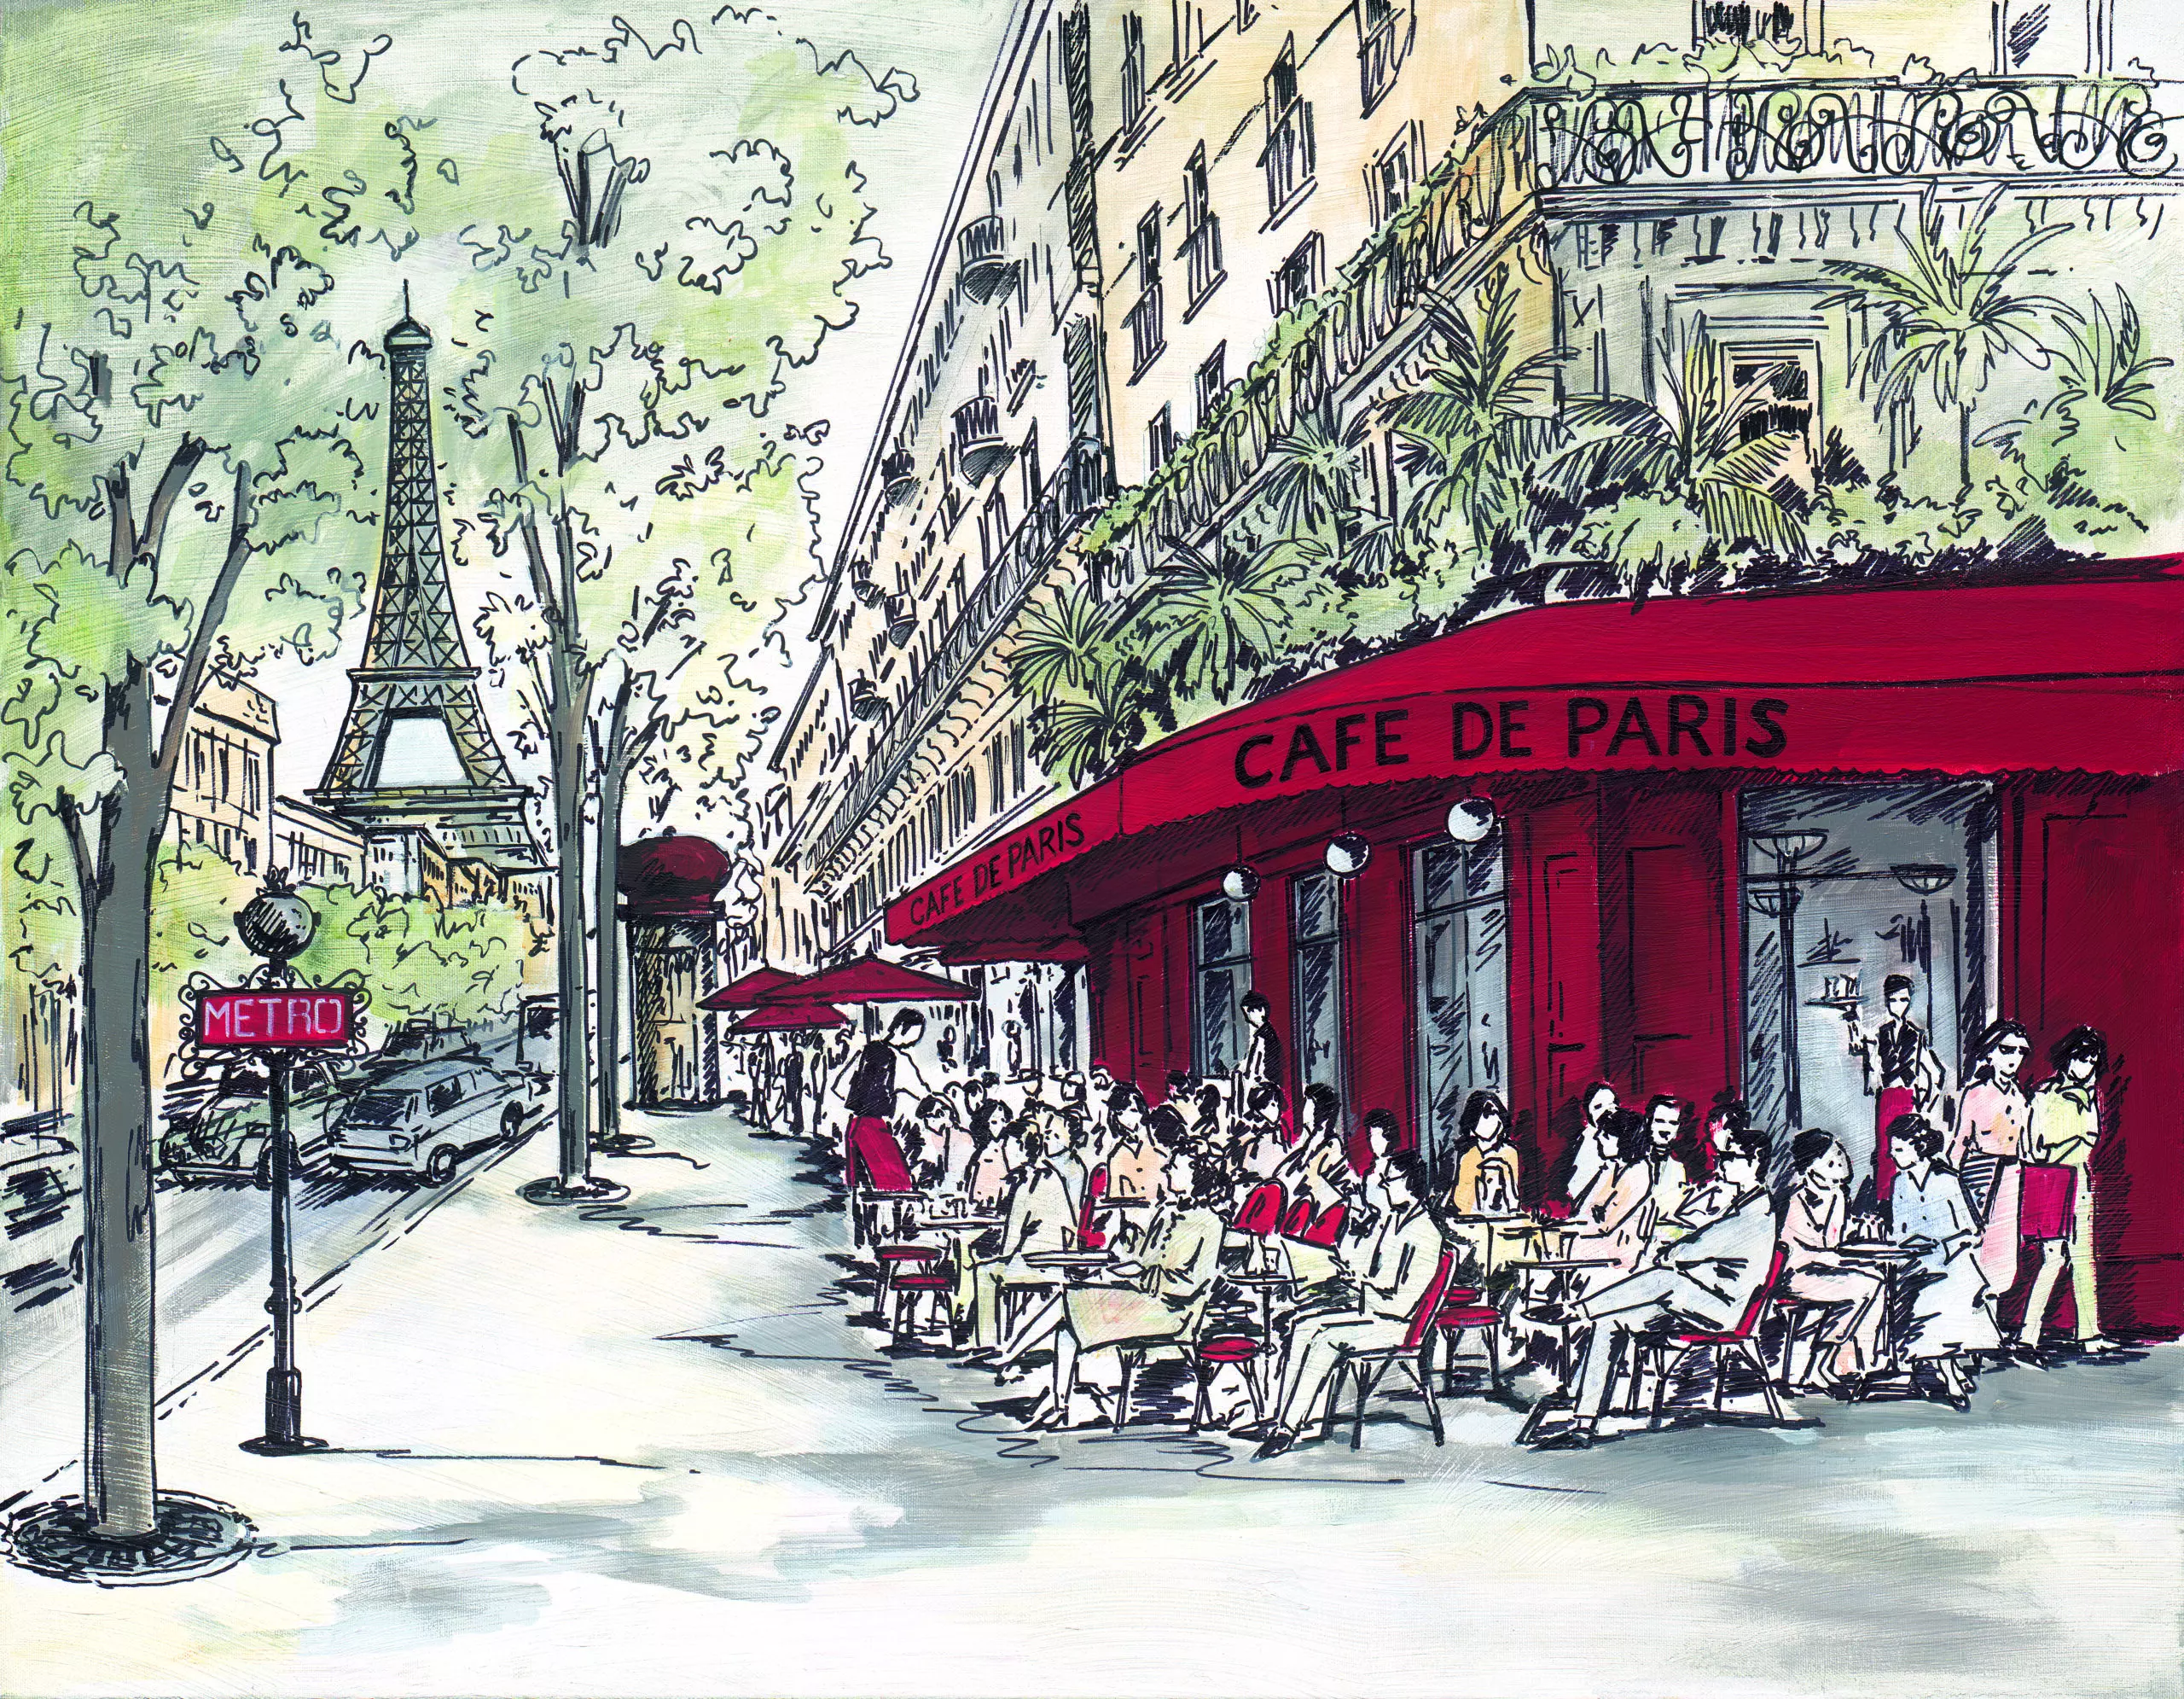 Wandbild (4992) Café de Paris präsentiert: Menschen,Technik,Kreatives,Architektur,Häuser,Sehenswürdigkeiten,Menschengruppen